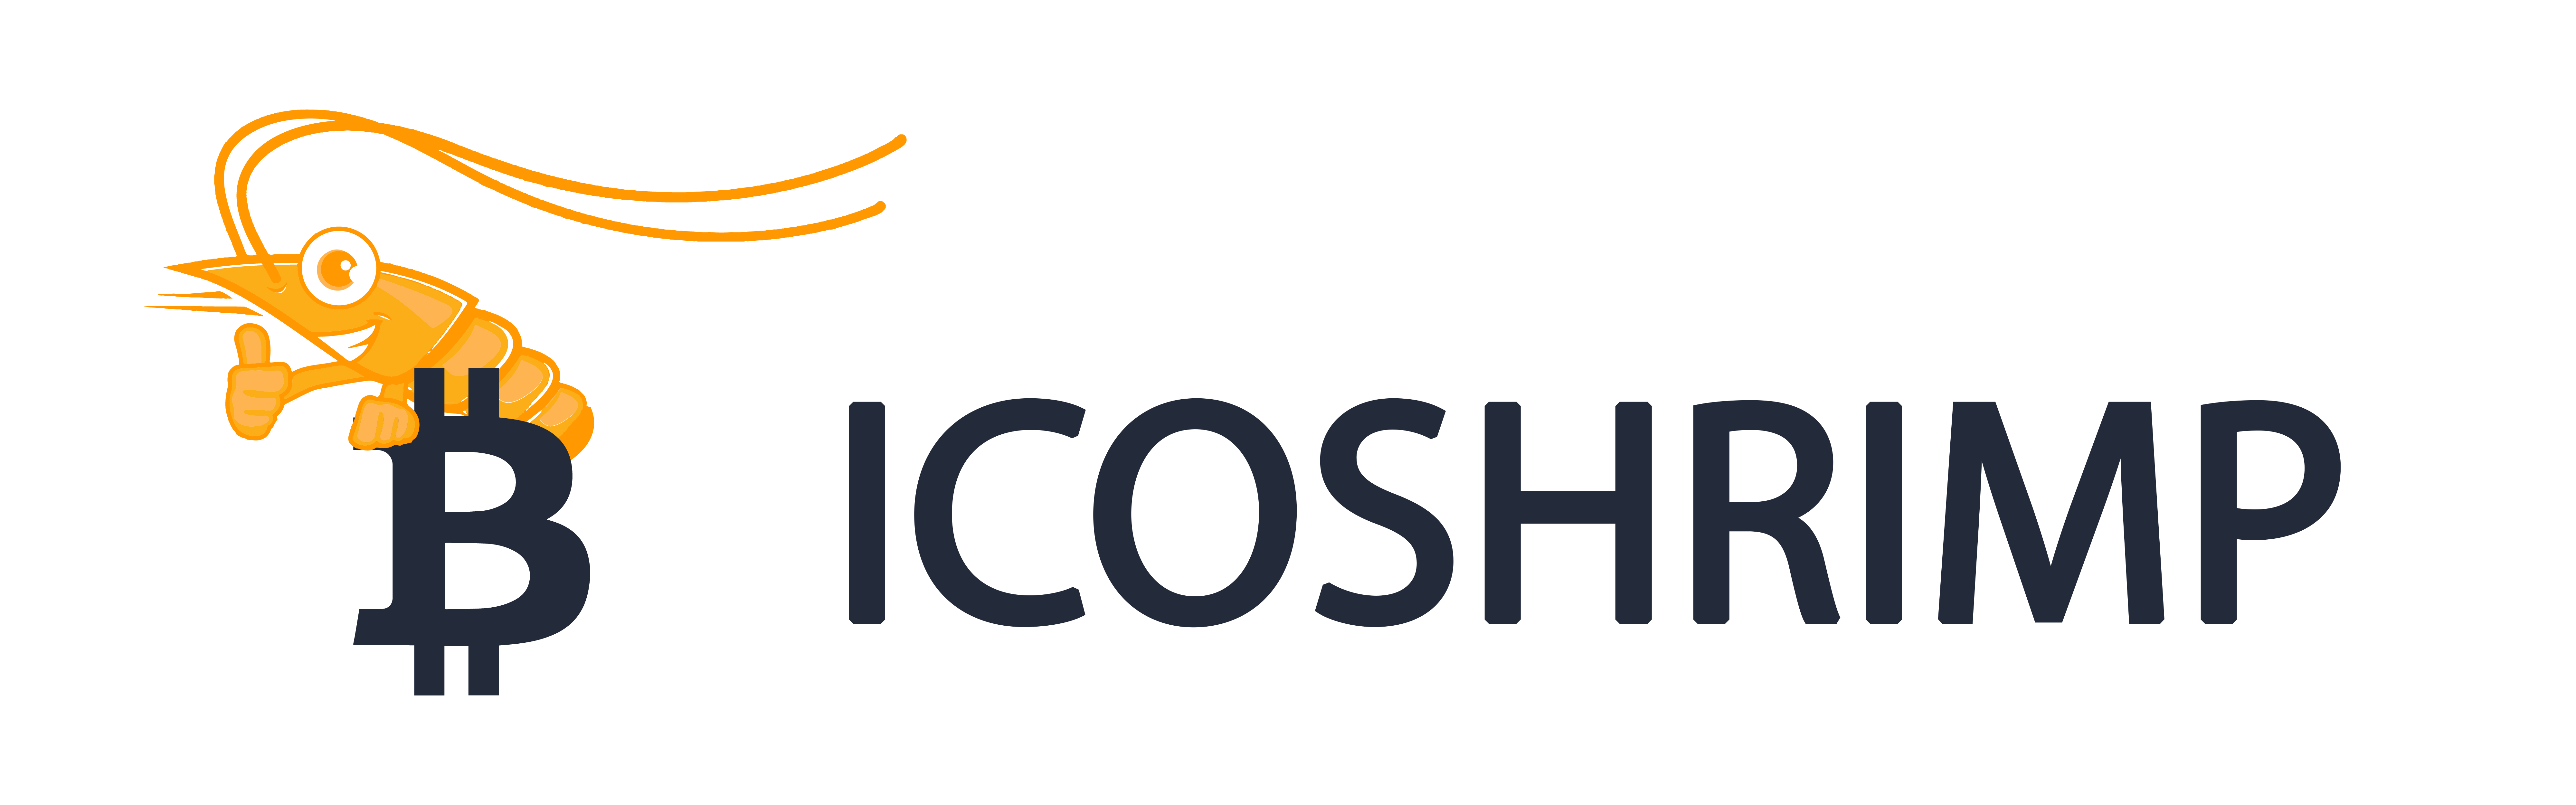 icoshrimp.com